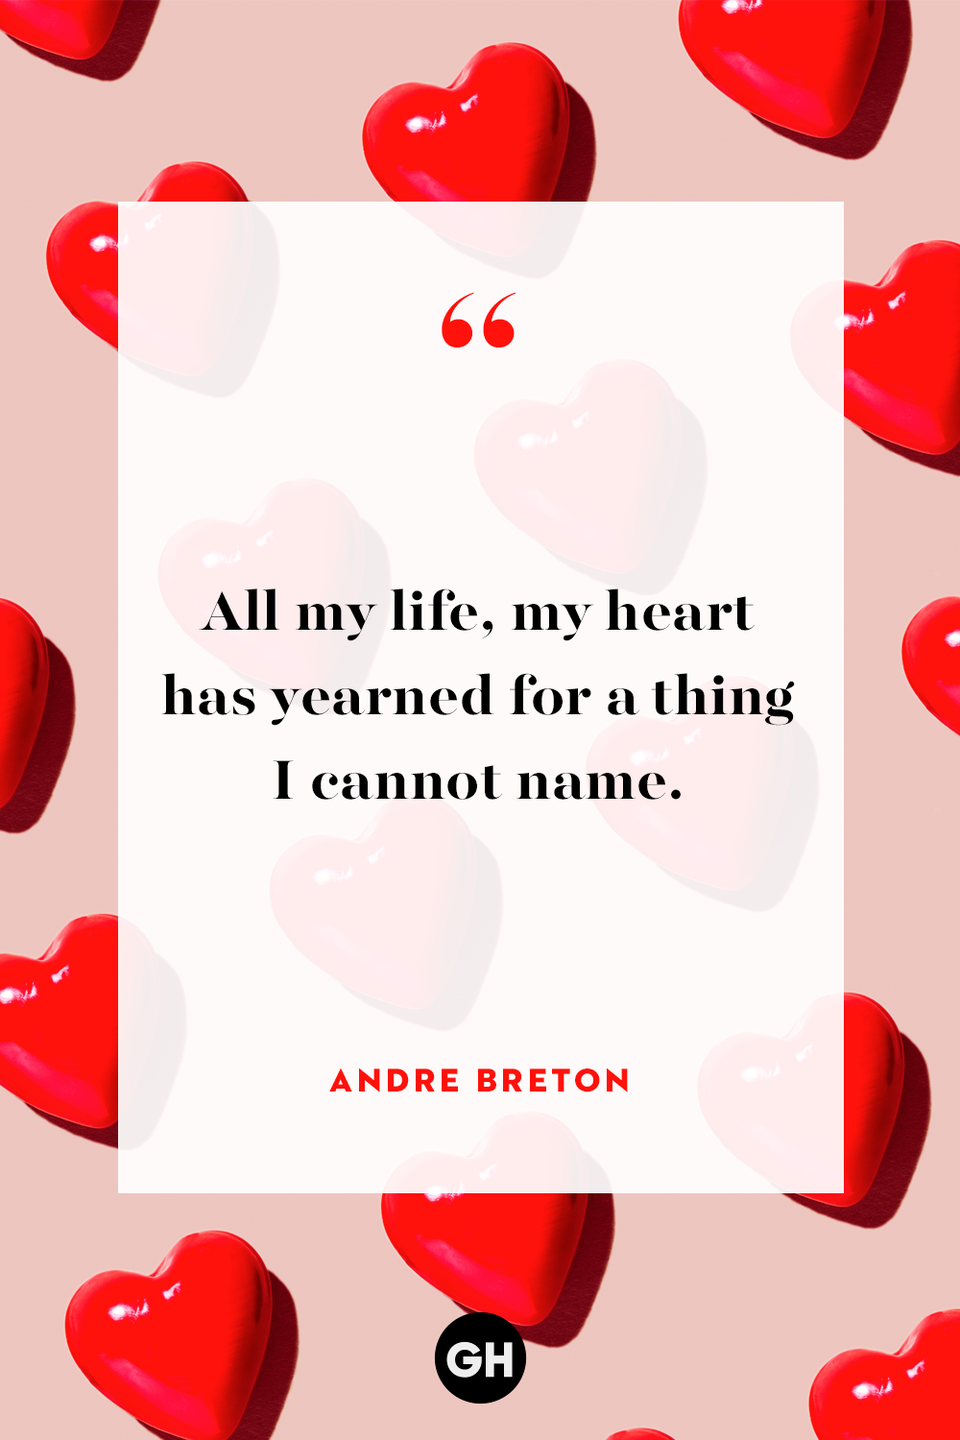 14) Andre Breton